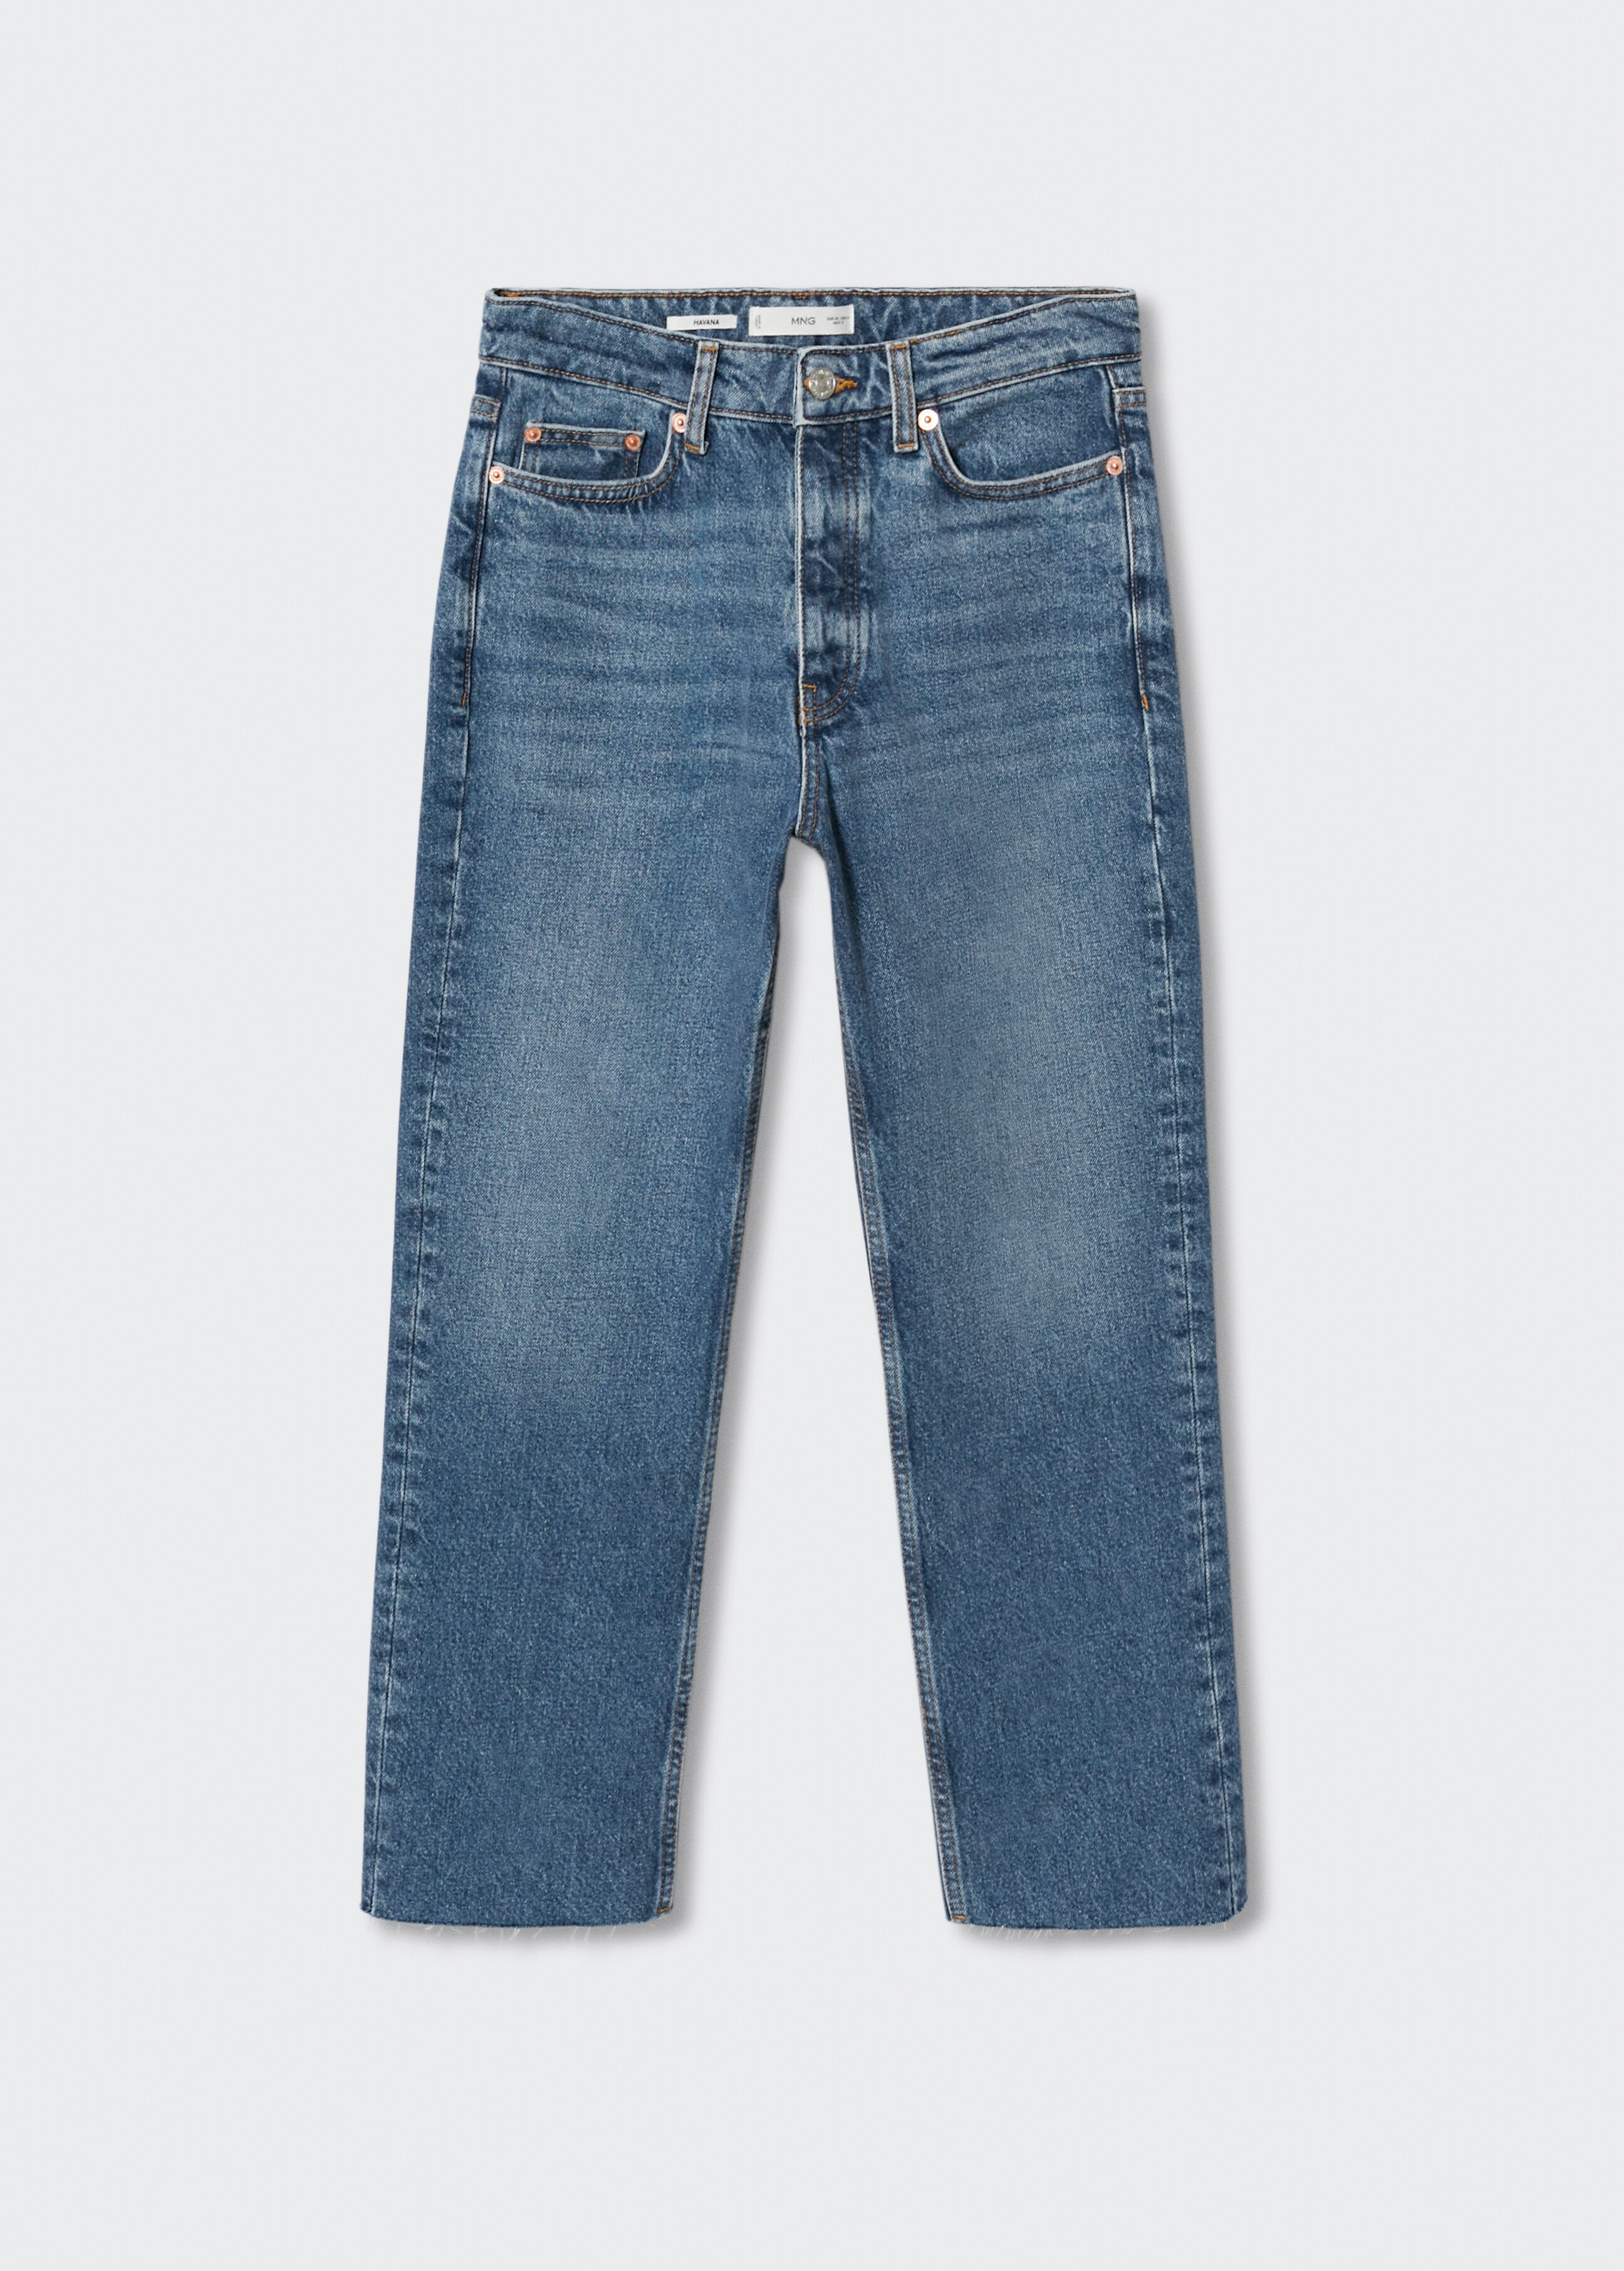 Jeans rectos tiro alto crop - Artículo sin modelo